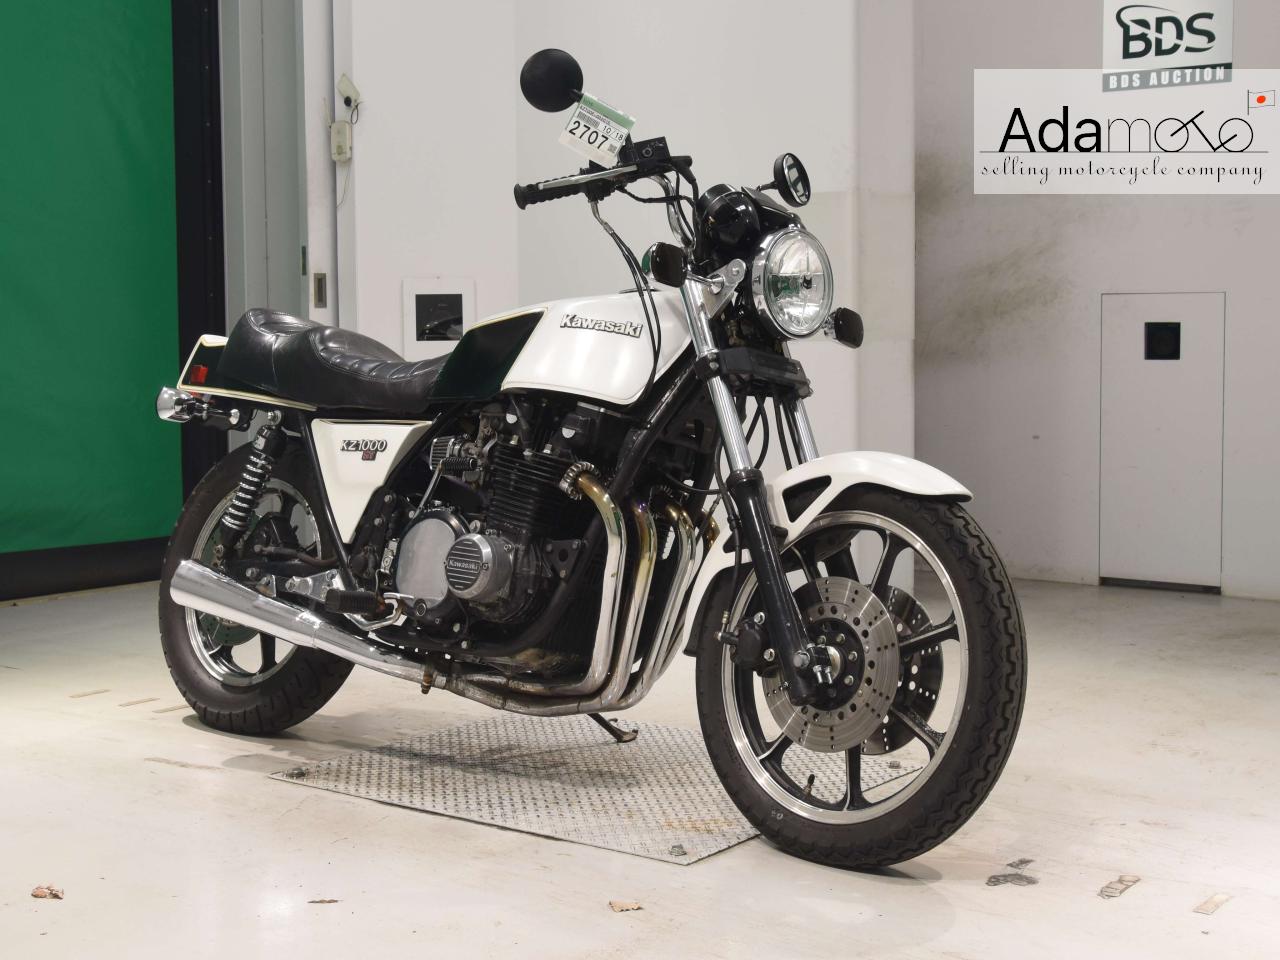 Kawasaki Z1000ST - Adamoto - Motorcycles from Japan